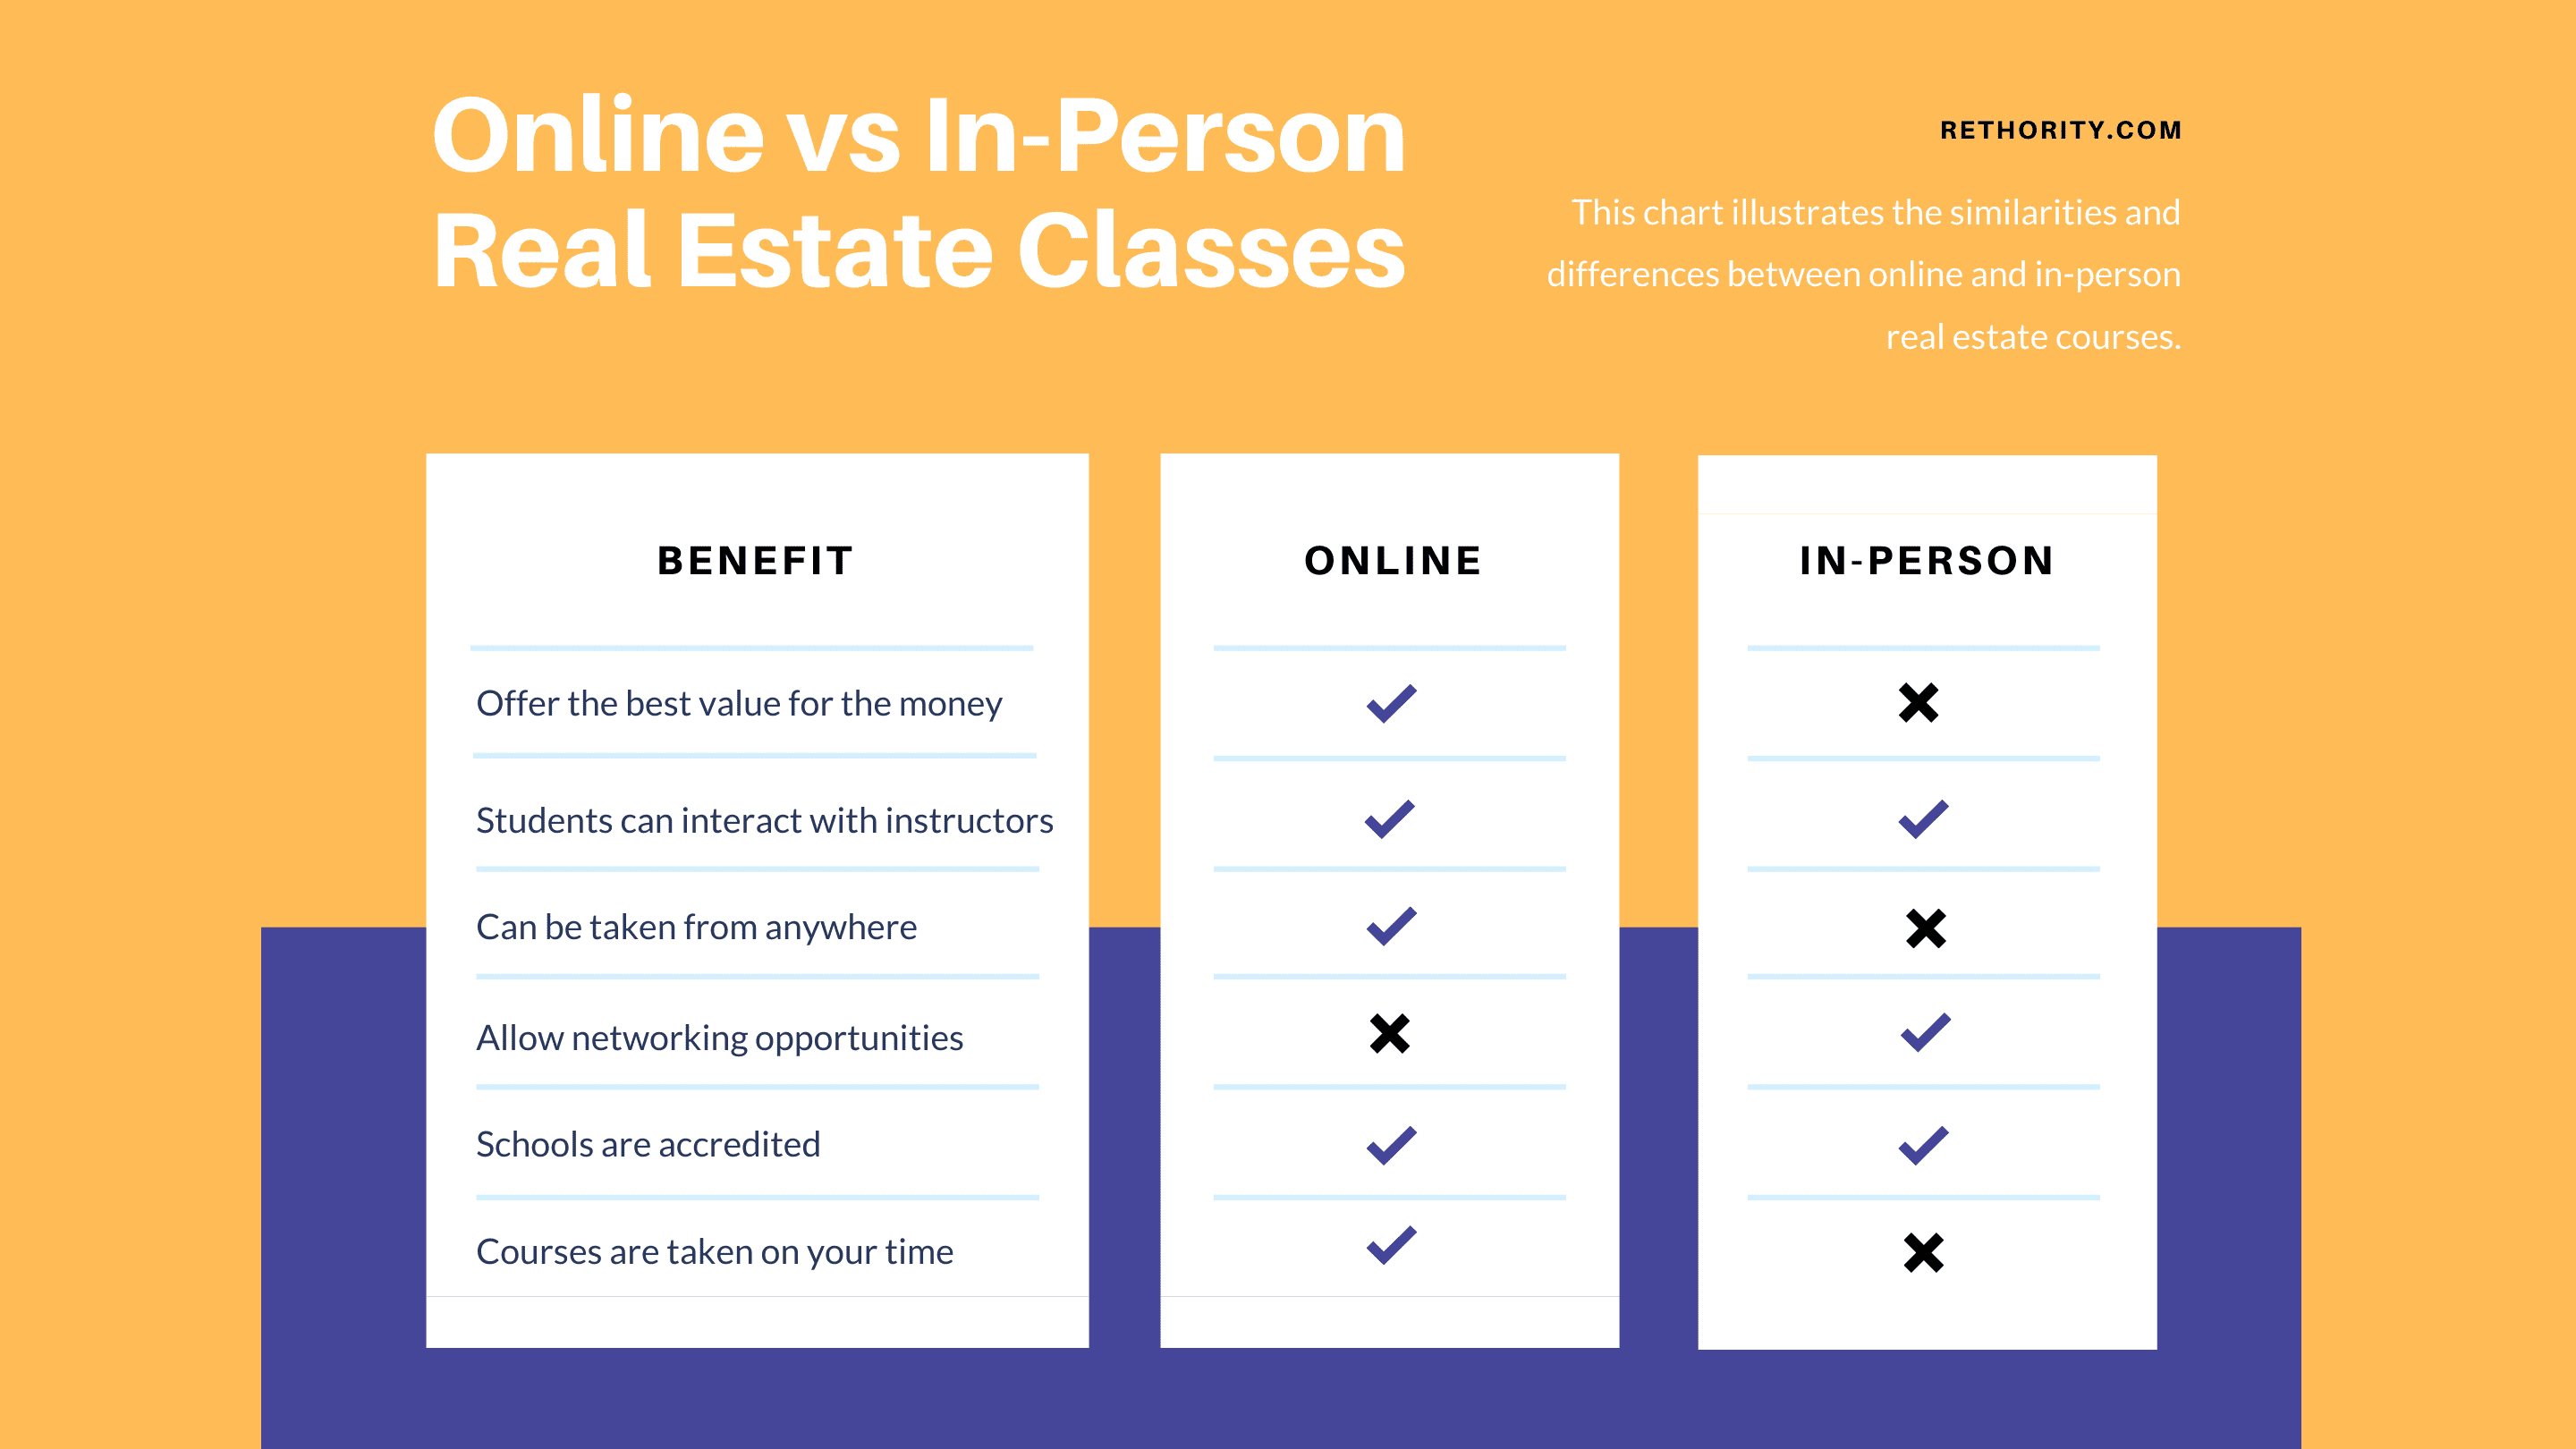 Online vs In-Person Real Estate Classes comparison chart